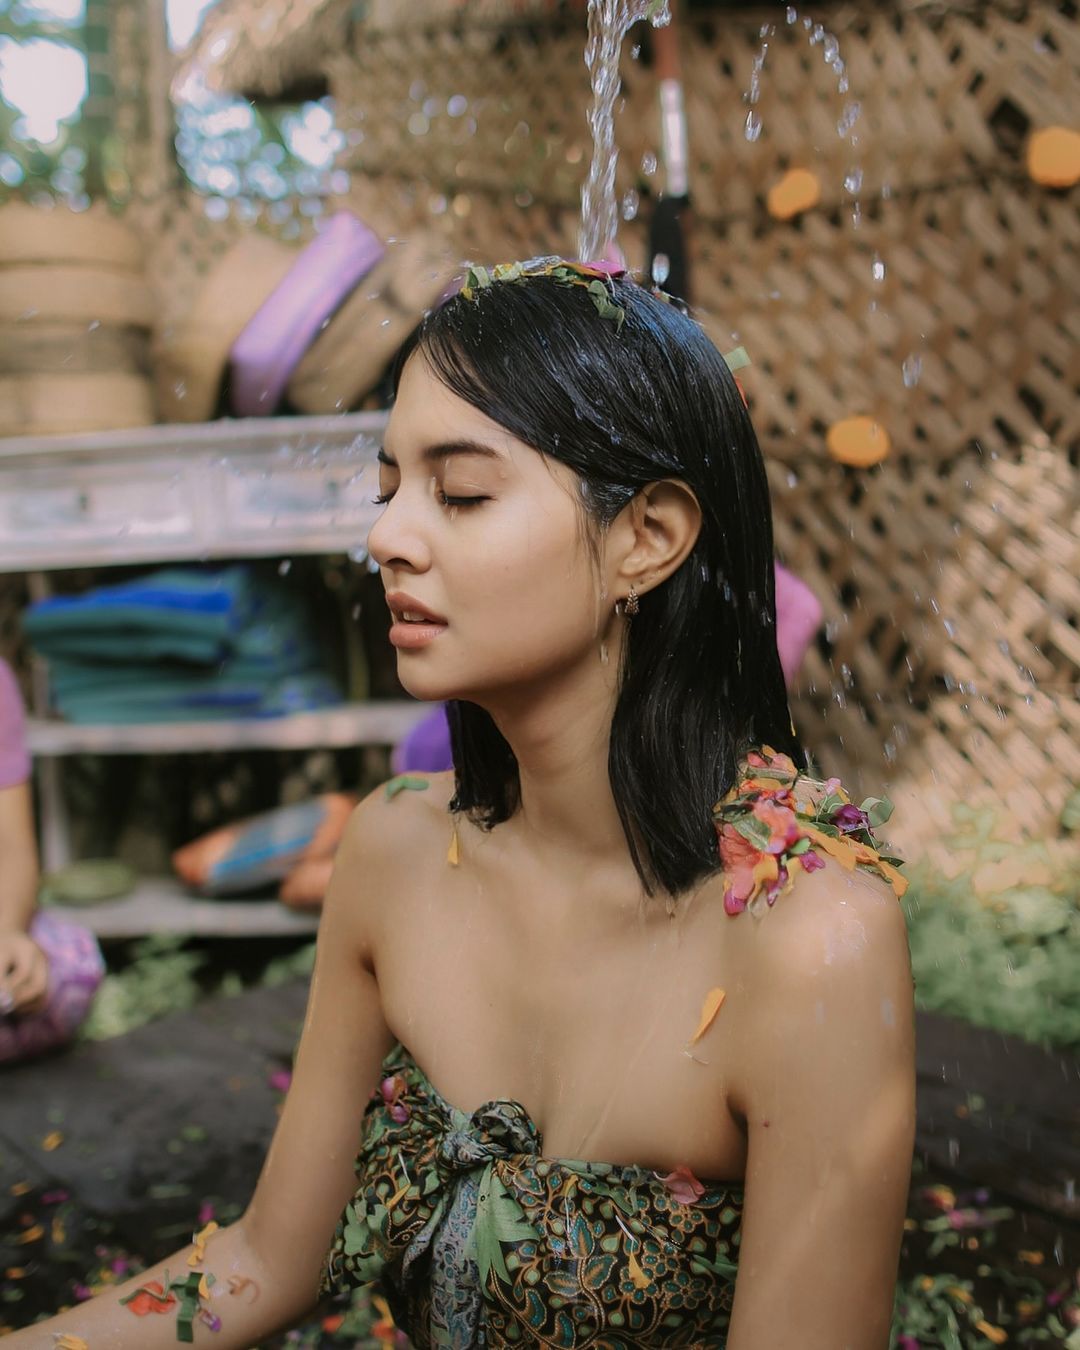 Aurelie Moeremans jalani ritual Melukat di Bali untuk kesehatan mentalnya